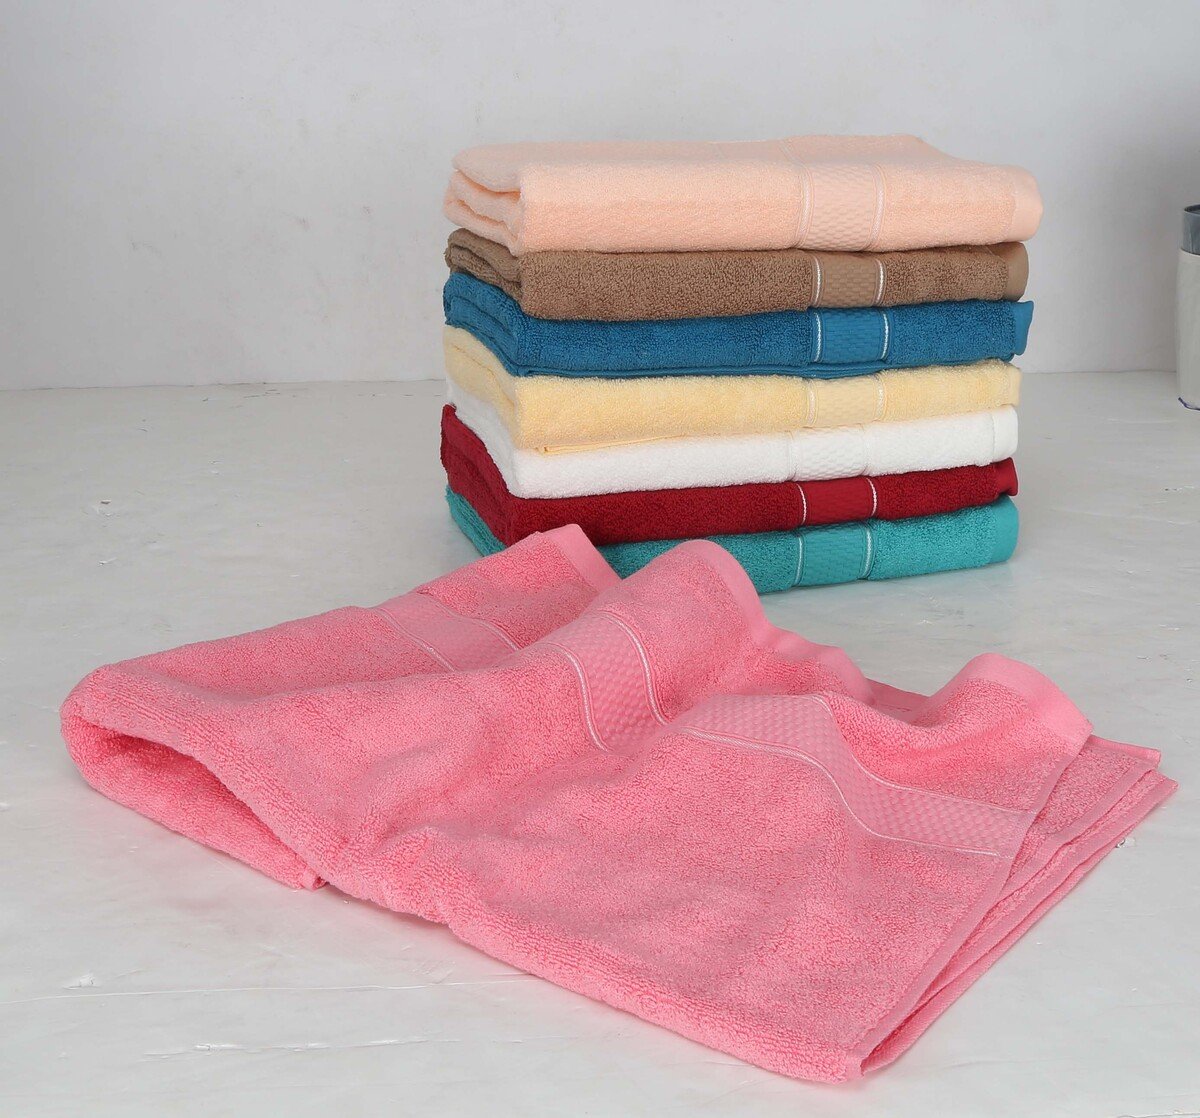 مابل ليف هوم منشفة حمام قطن قطعة واحدة بألوان متنوعة المقاس: العرض 70 × الطول 140 سم